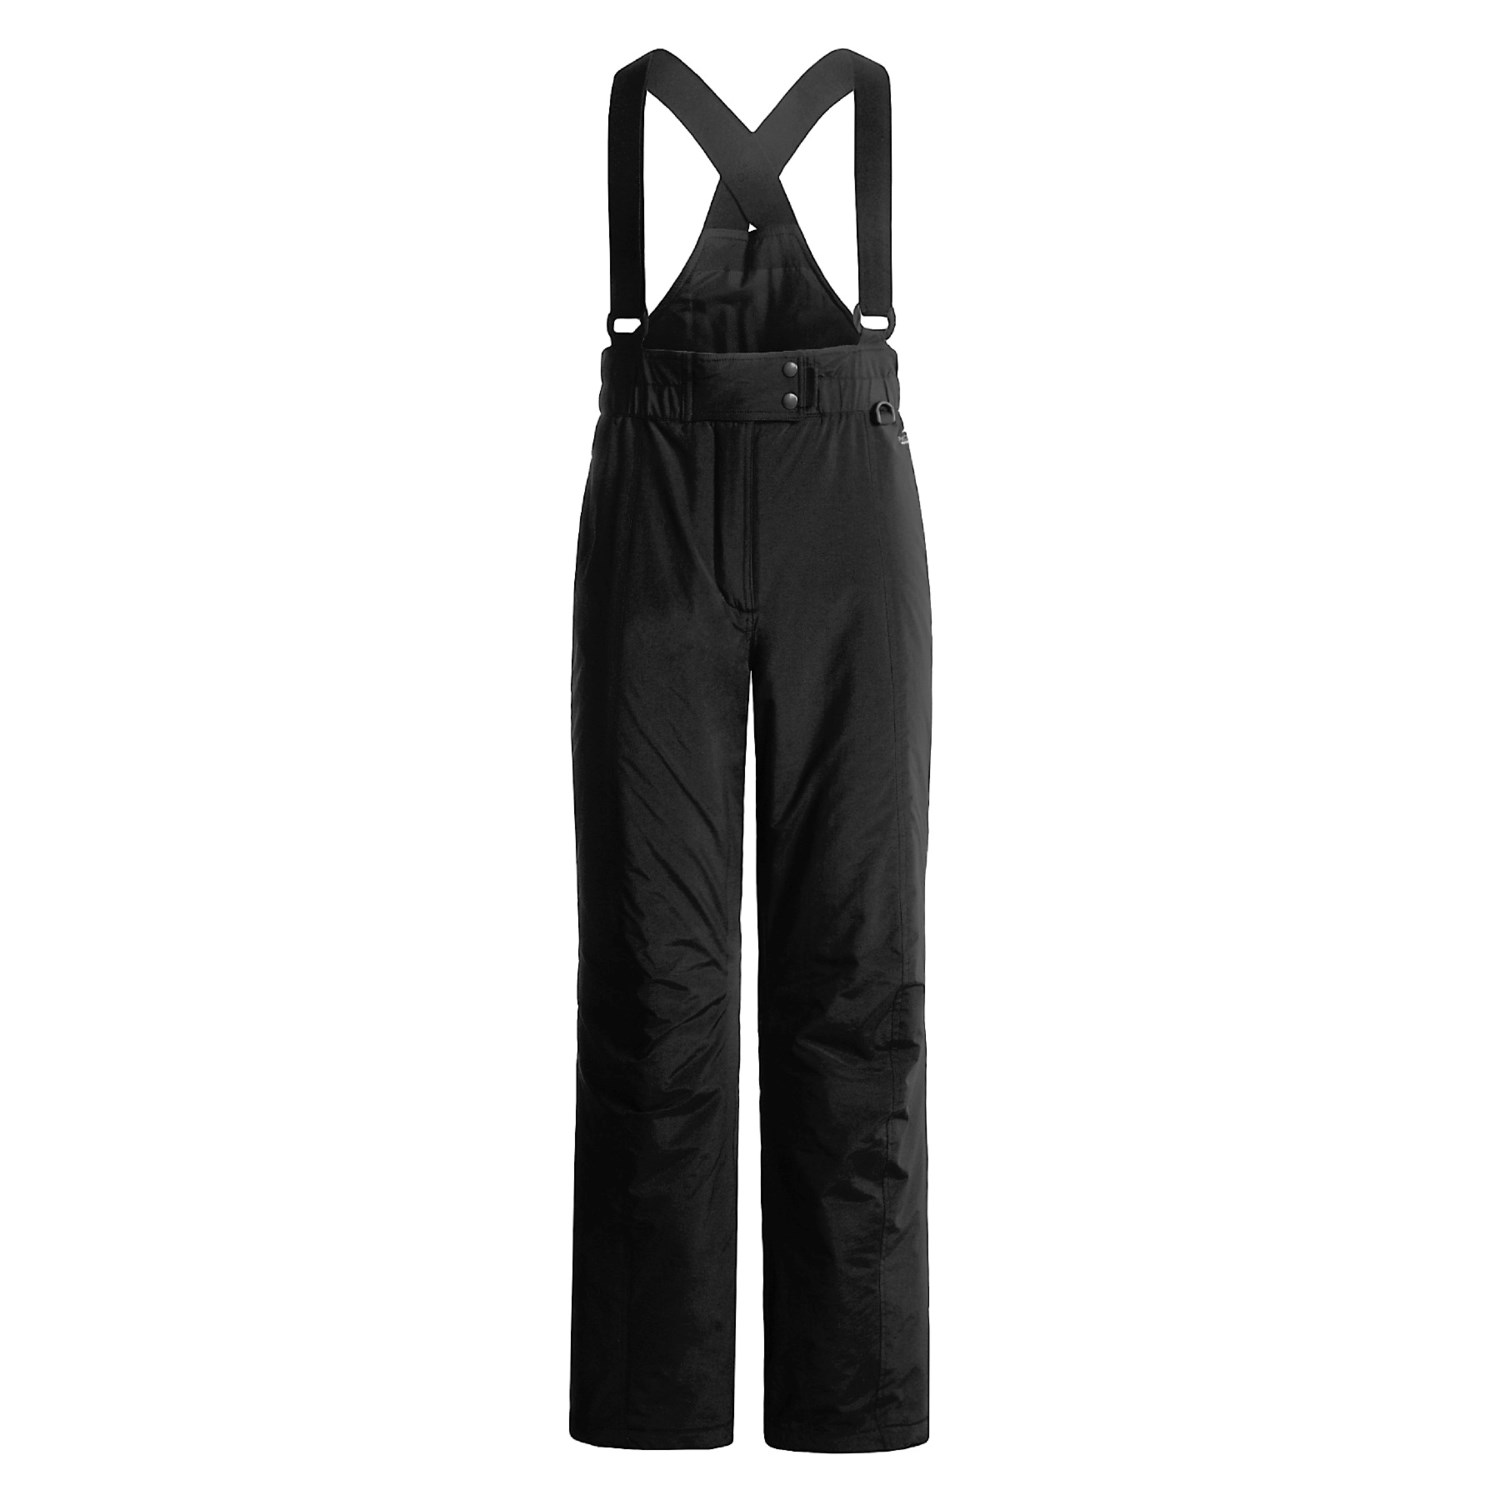 Pac-Tech Ski Bib Pants (For Women) 1311P - Save 53%